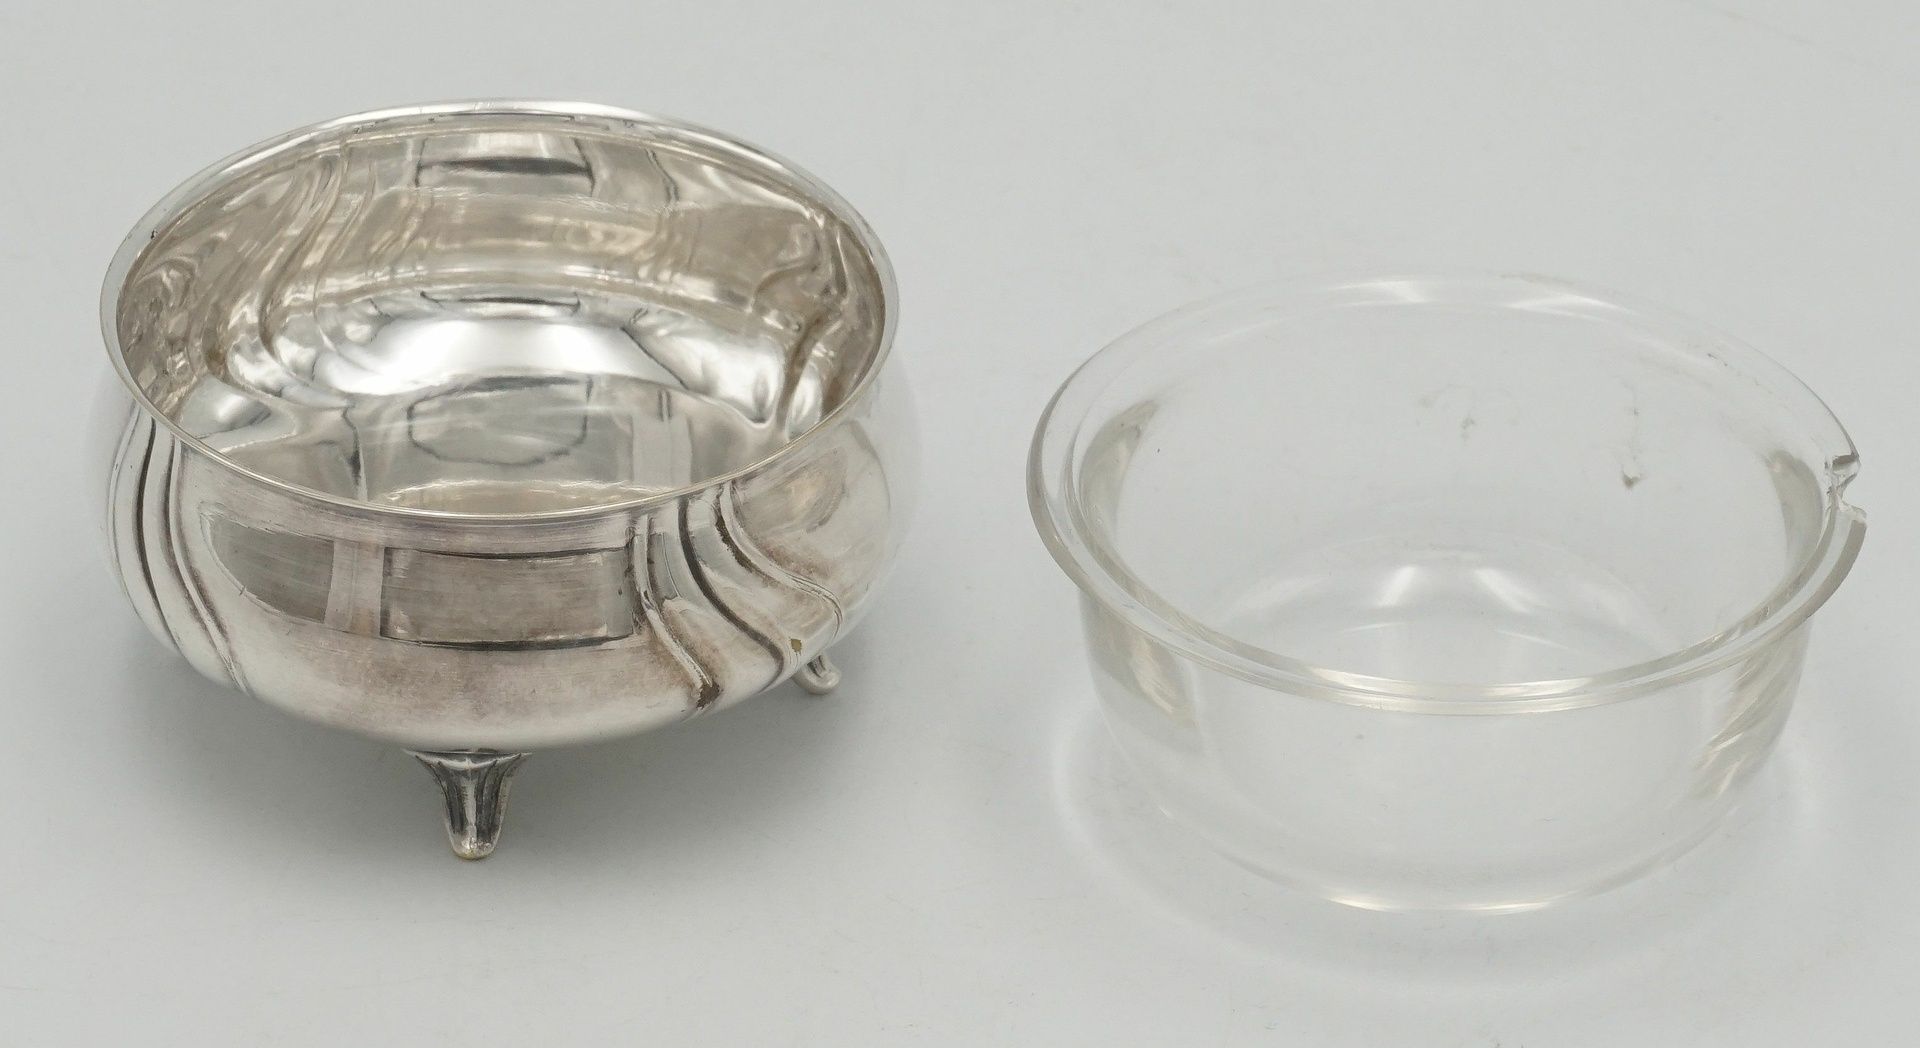 WMF Schälchen mit Glaseinsatz und zwei Serviettenringe aus Silber - Bild 2 aus 4